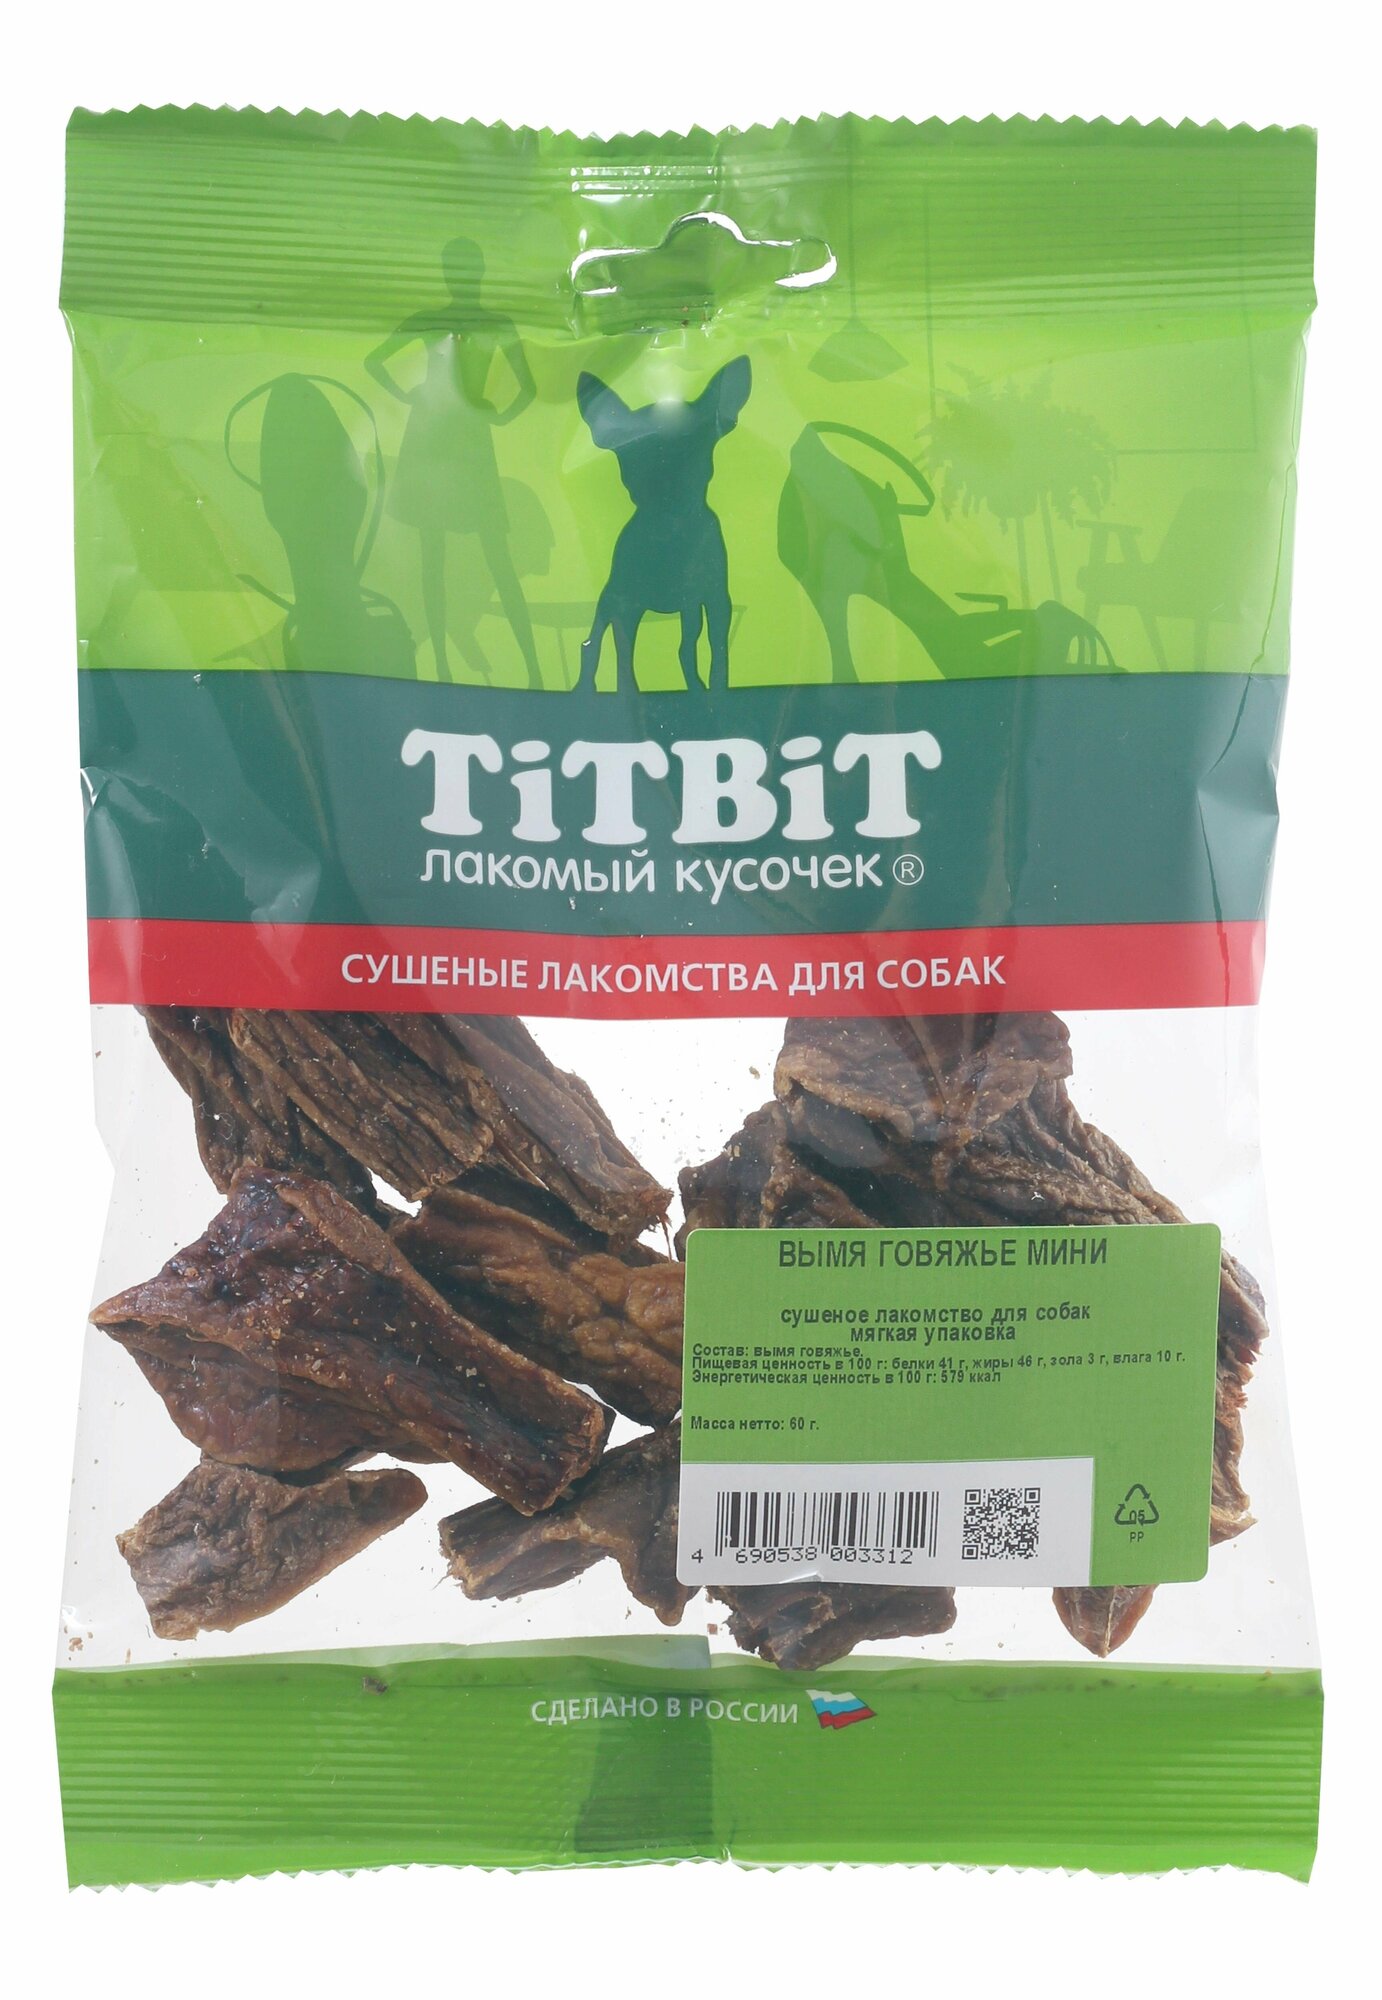 TiTBiT Вымя говяжье мини - мягкая упаковка 0,06 кг 19642